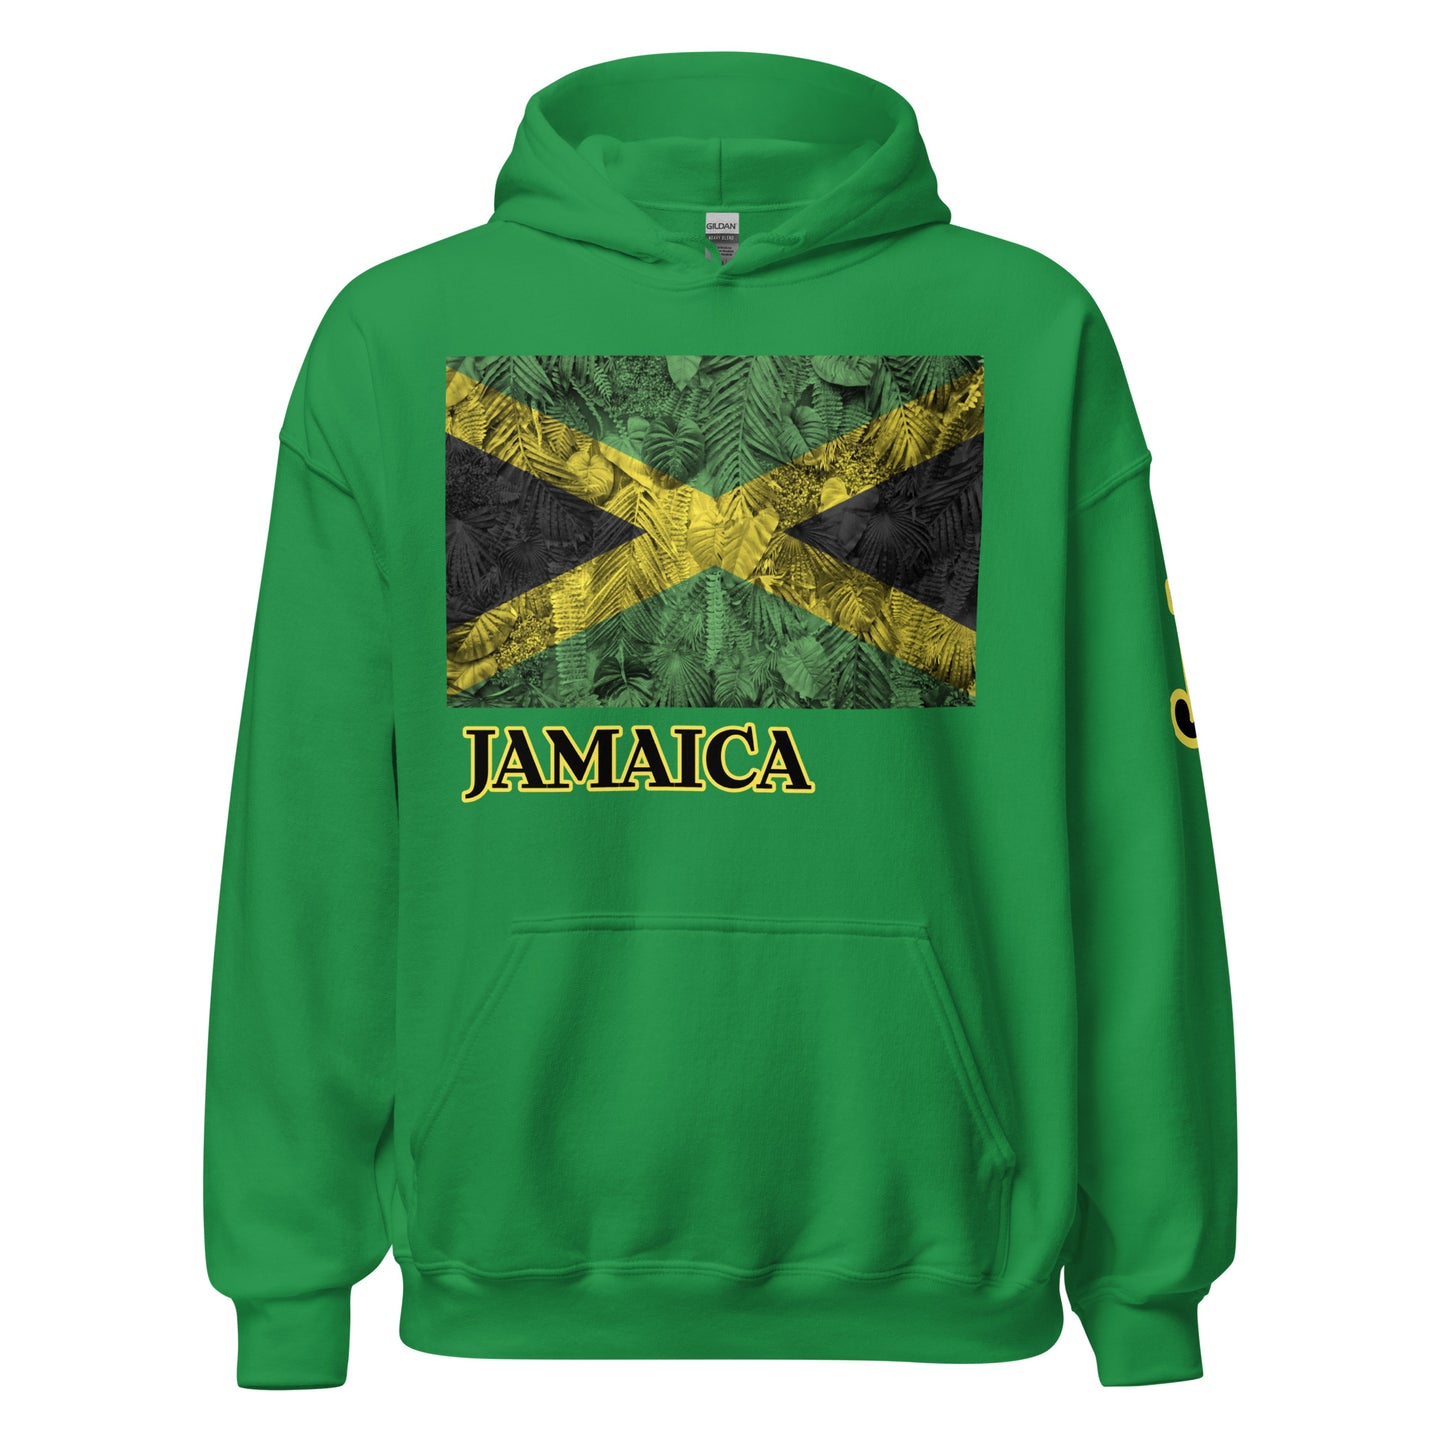 JAMAICA HOODIE